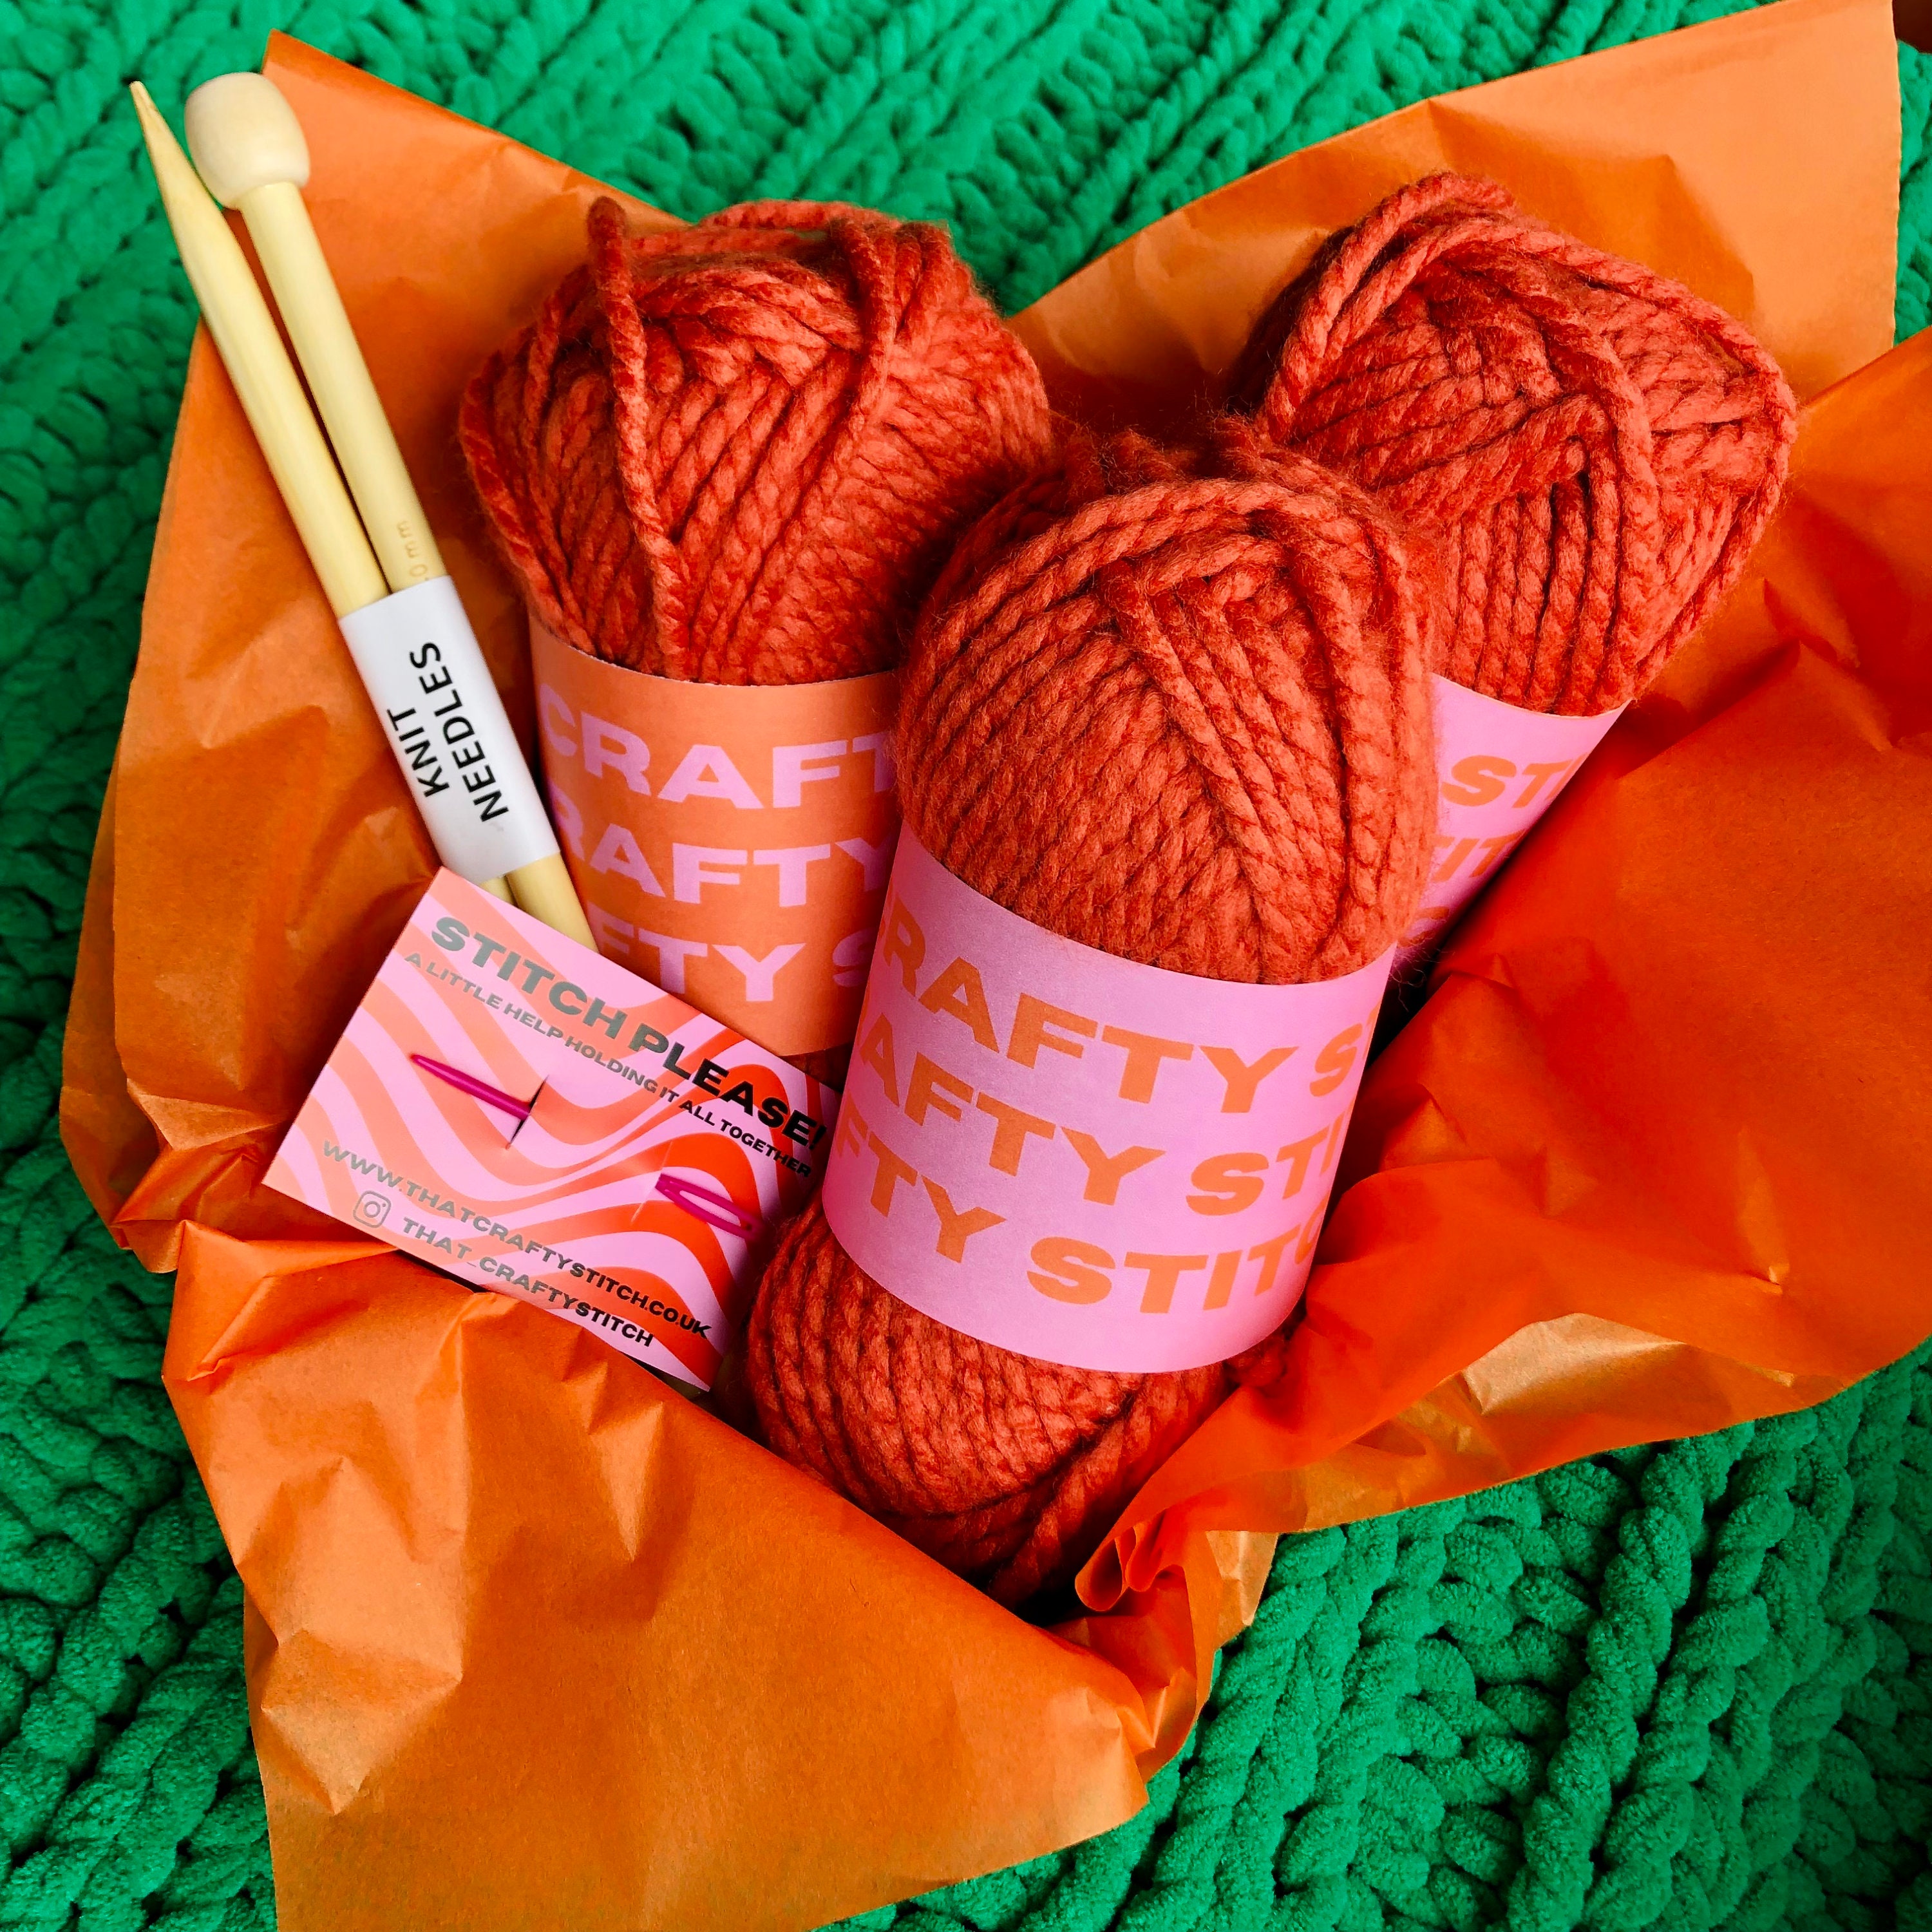  NGHTMRKT Scarf Knitting Kit for Beginners Adults